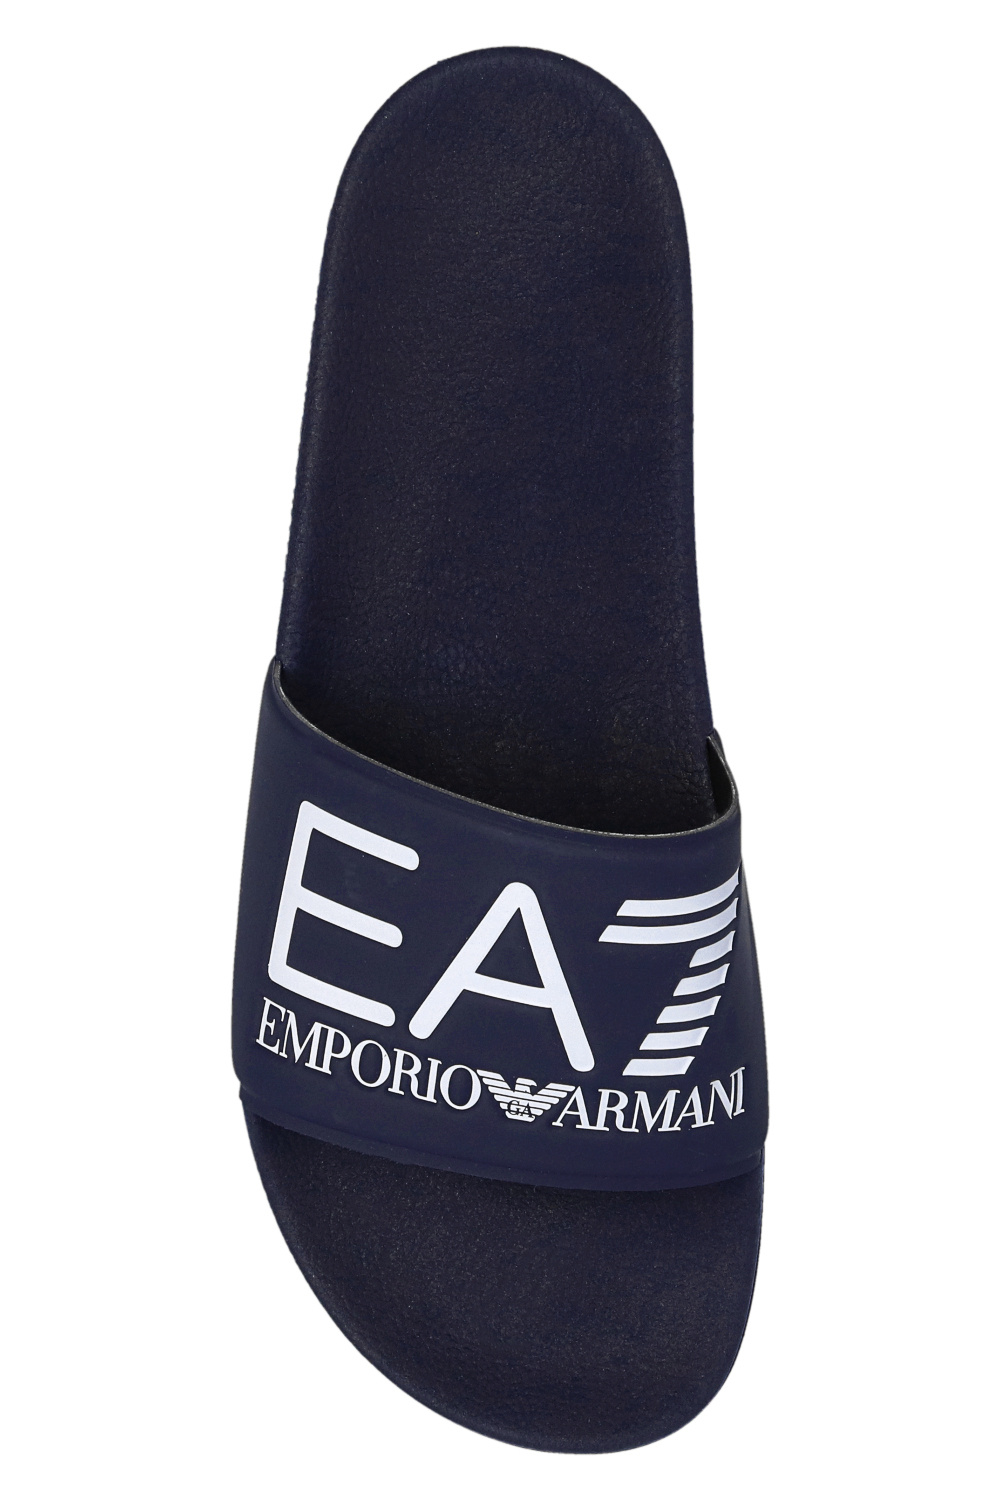 Emporio double-breasted EA7 | Shoes print - Giorgio Armani | blazer zigzag Blau Armani - notched-collar shirt Emporio IetpShops Armani Men\'s